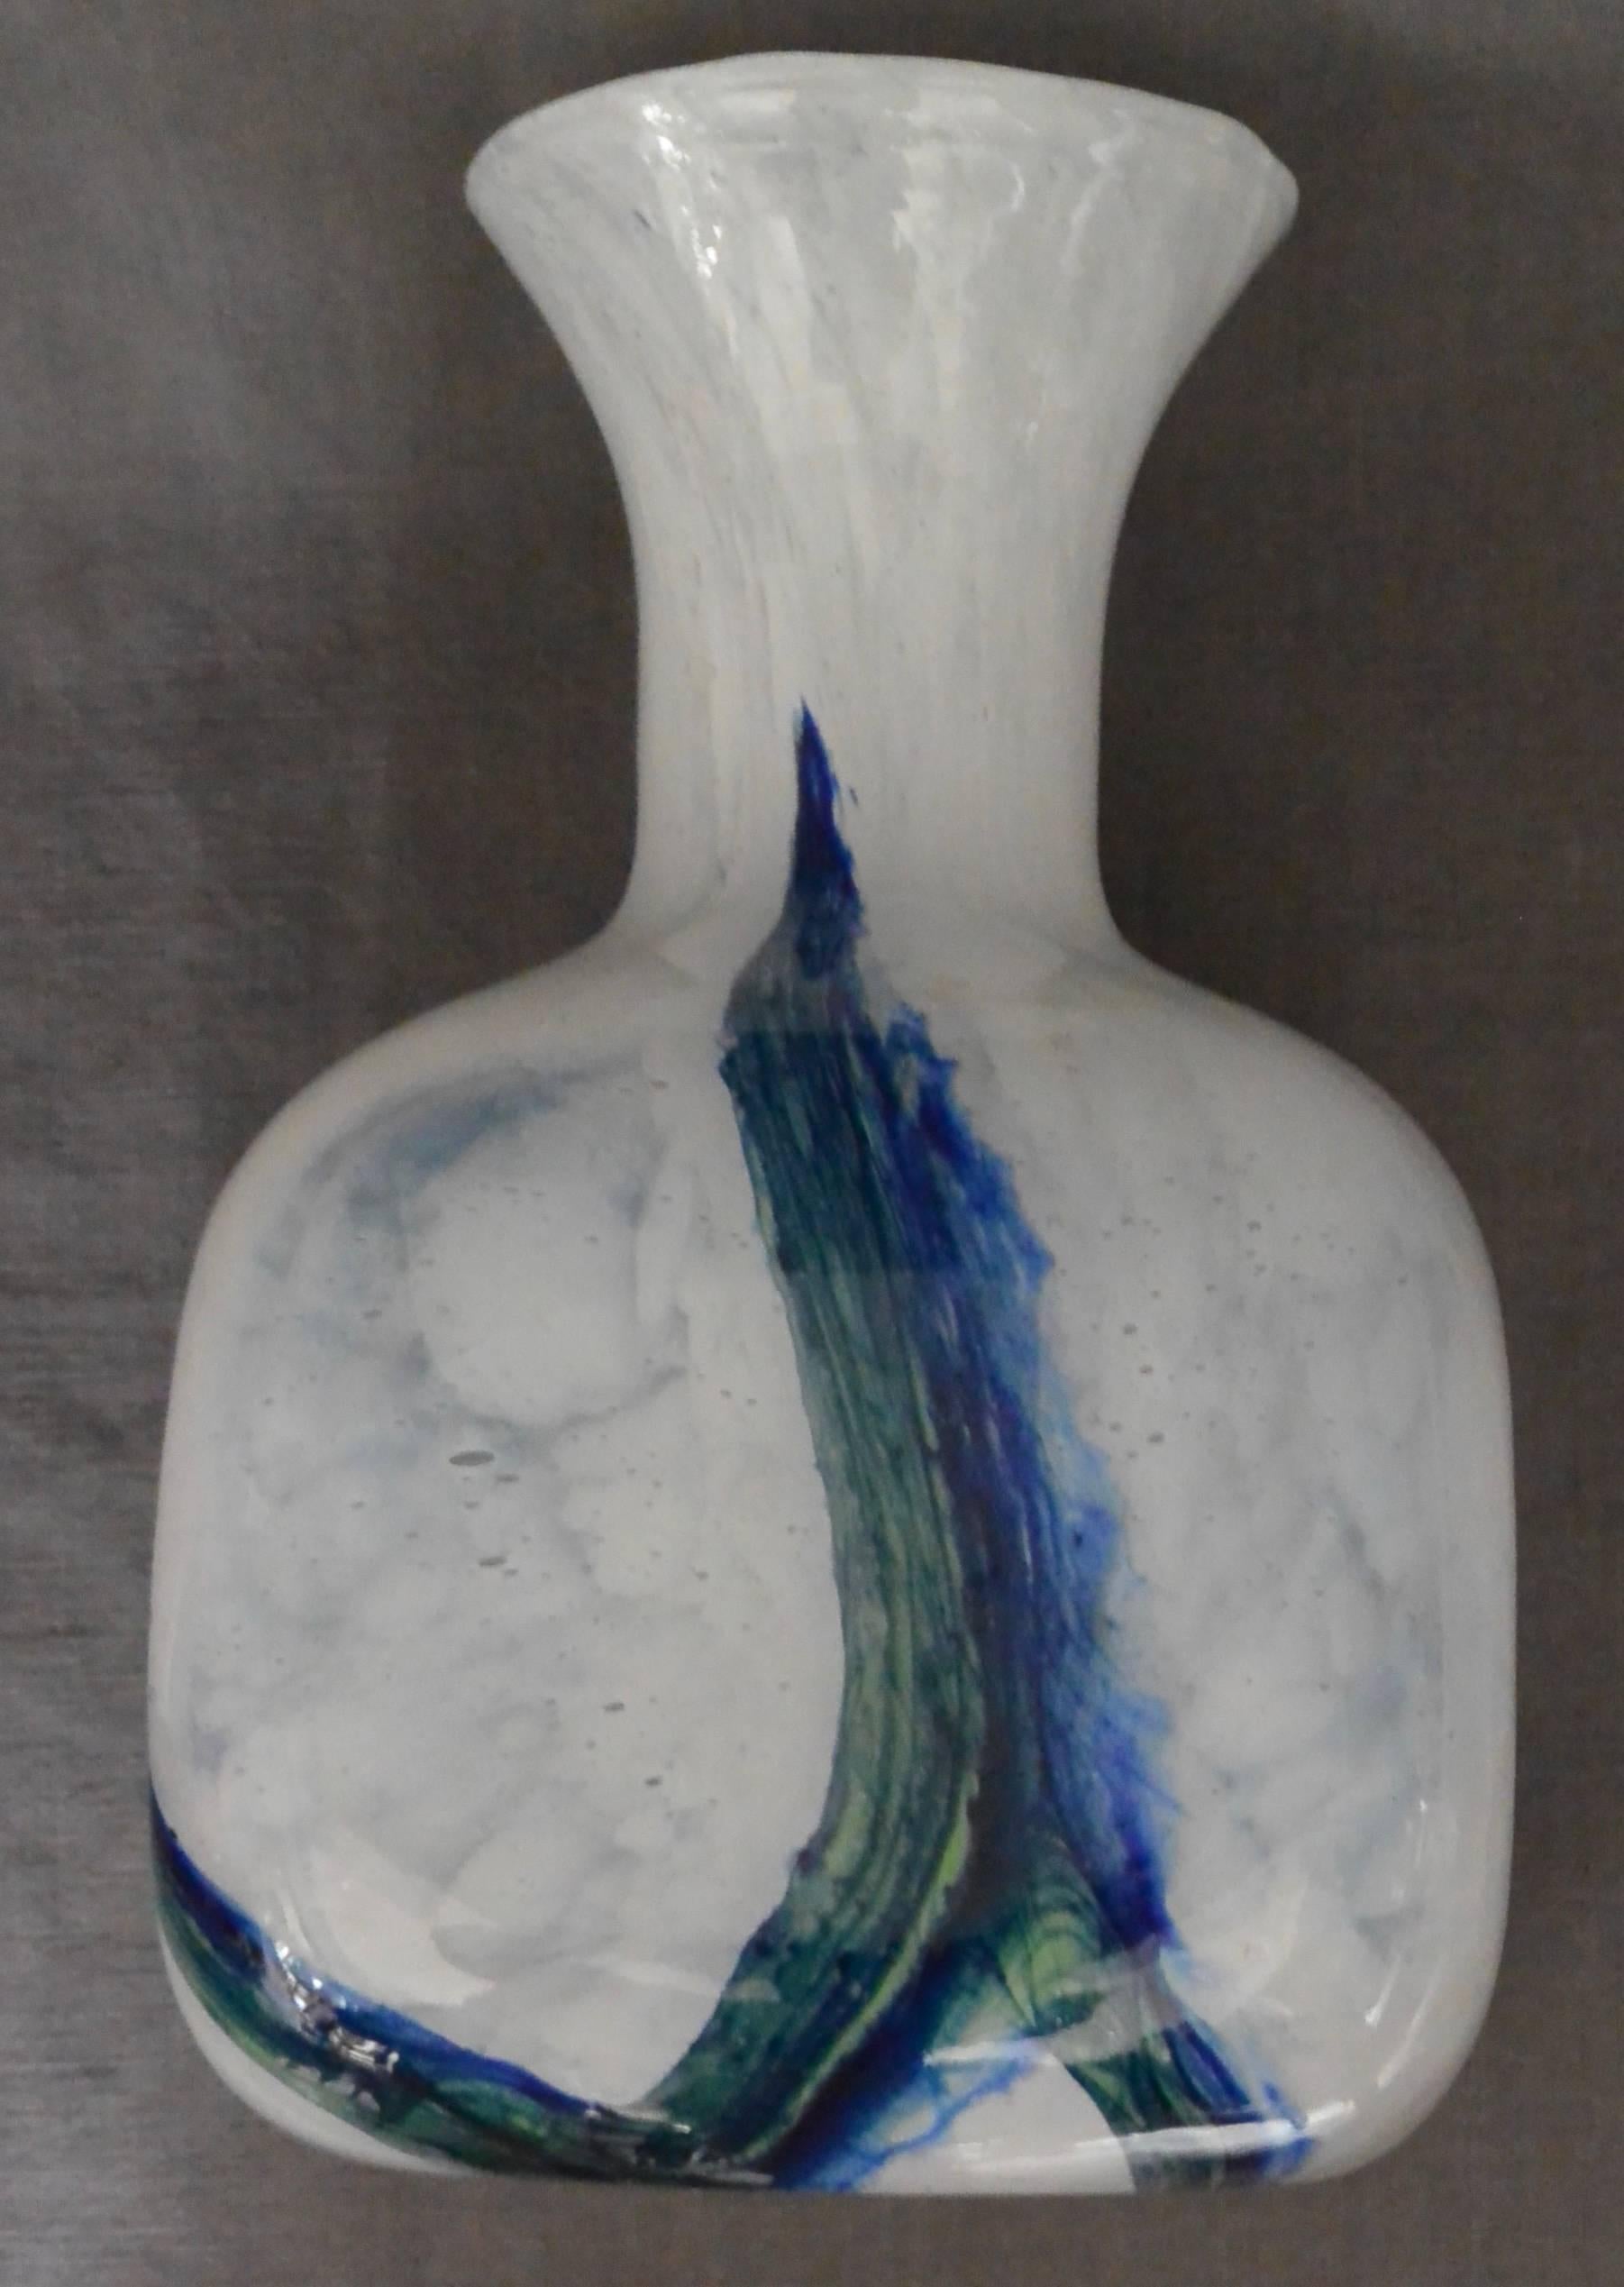 Vase en verre bleu, blanc et vert de Murano. Vintage vase à base carrée avec col évasé. Italie, vers les années 1960. 
Dimensions : 5.base carrée de 75